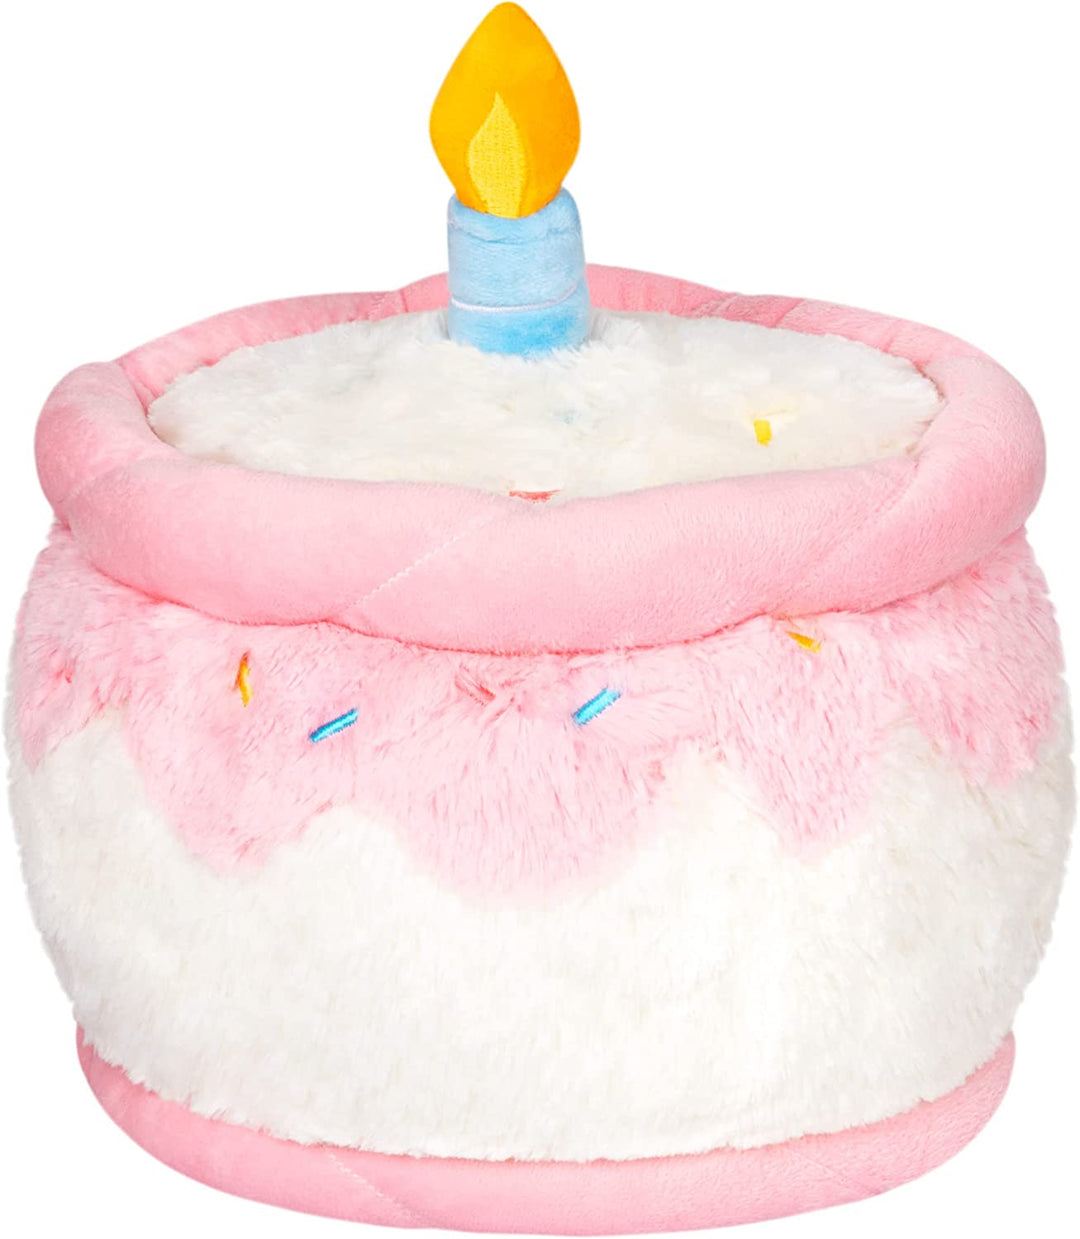 Squishable Mini Comfort Food Happy Birthday Cake 7'' Plush